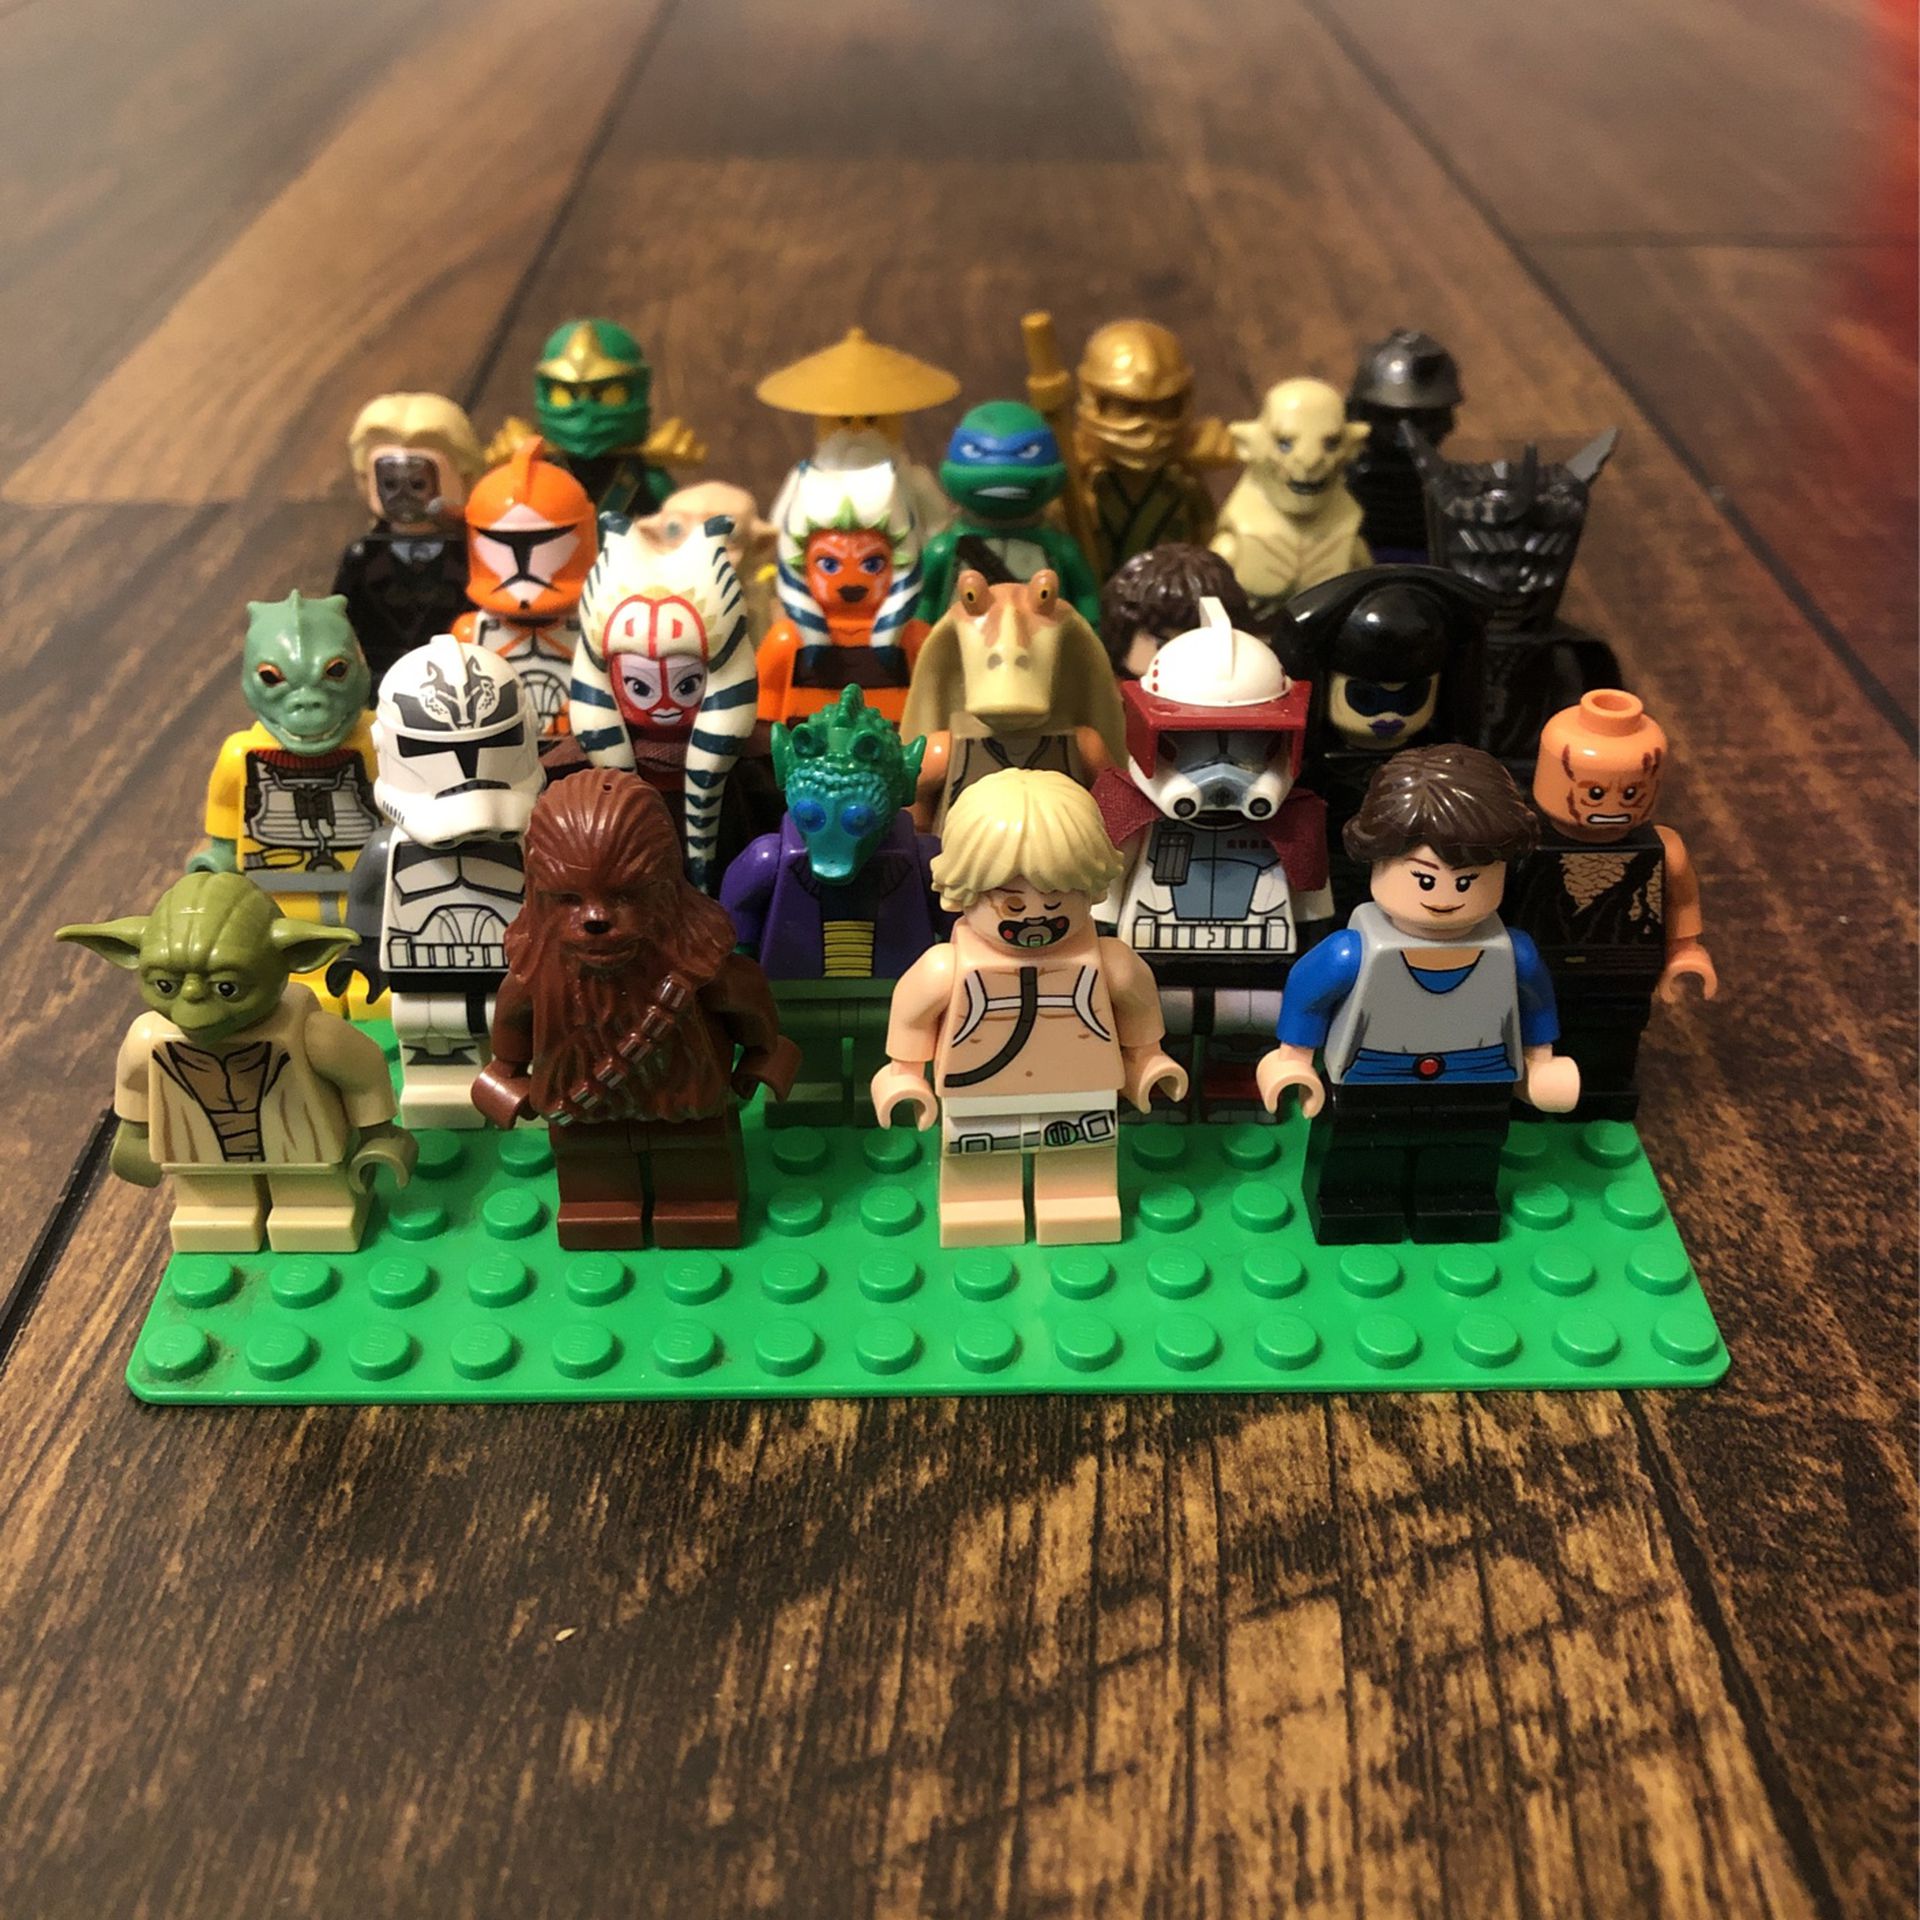 HUGE lot of Lego Minifigures